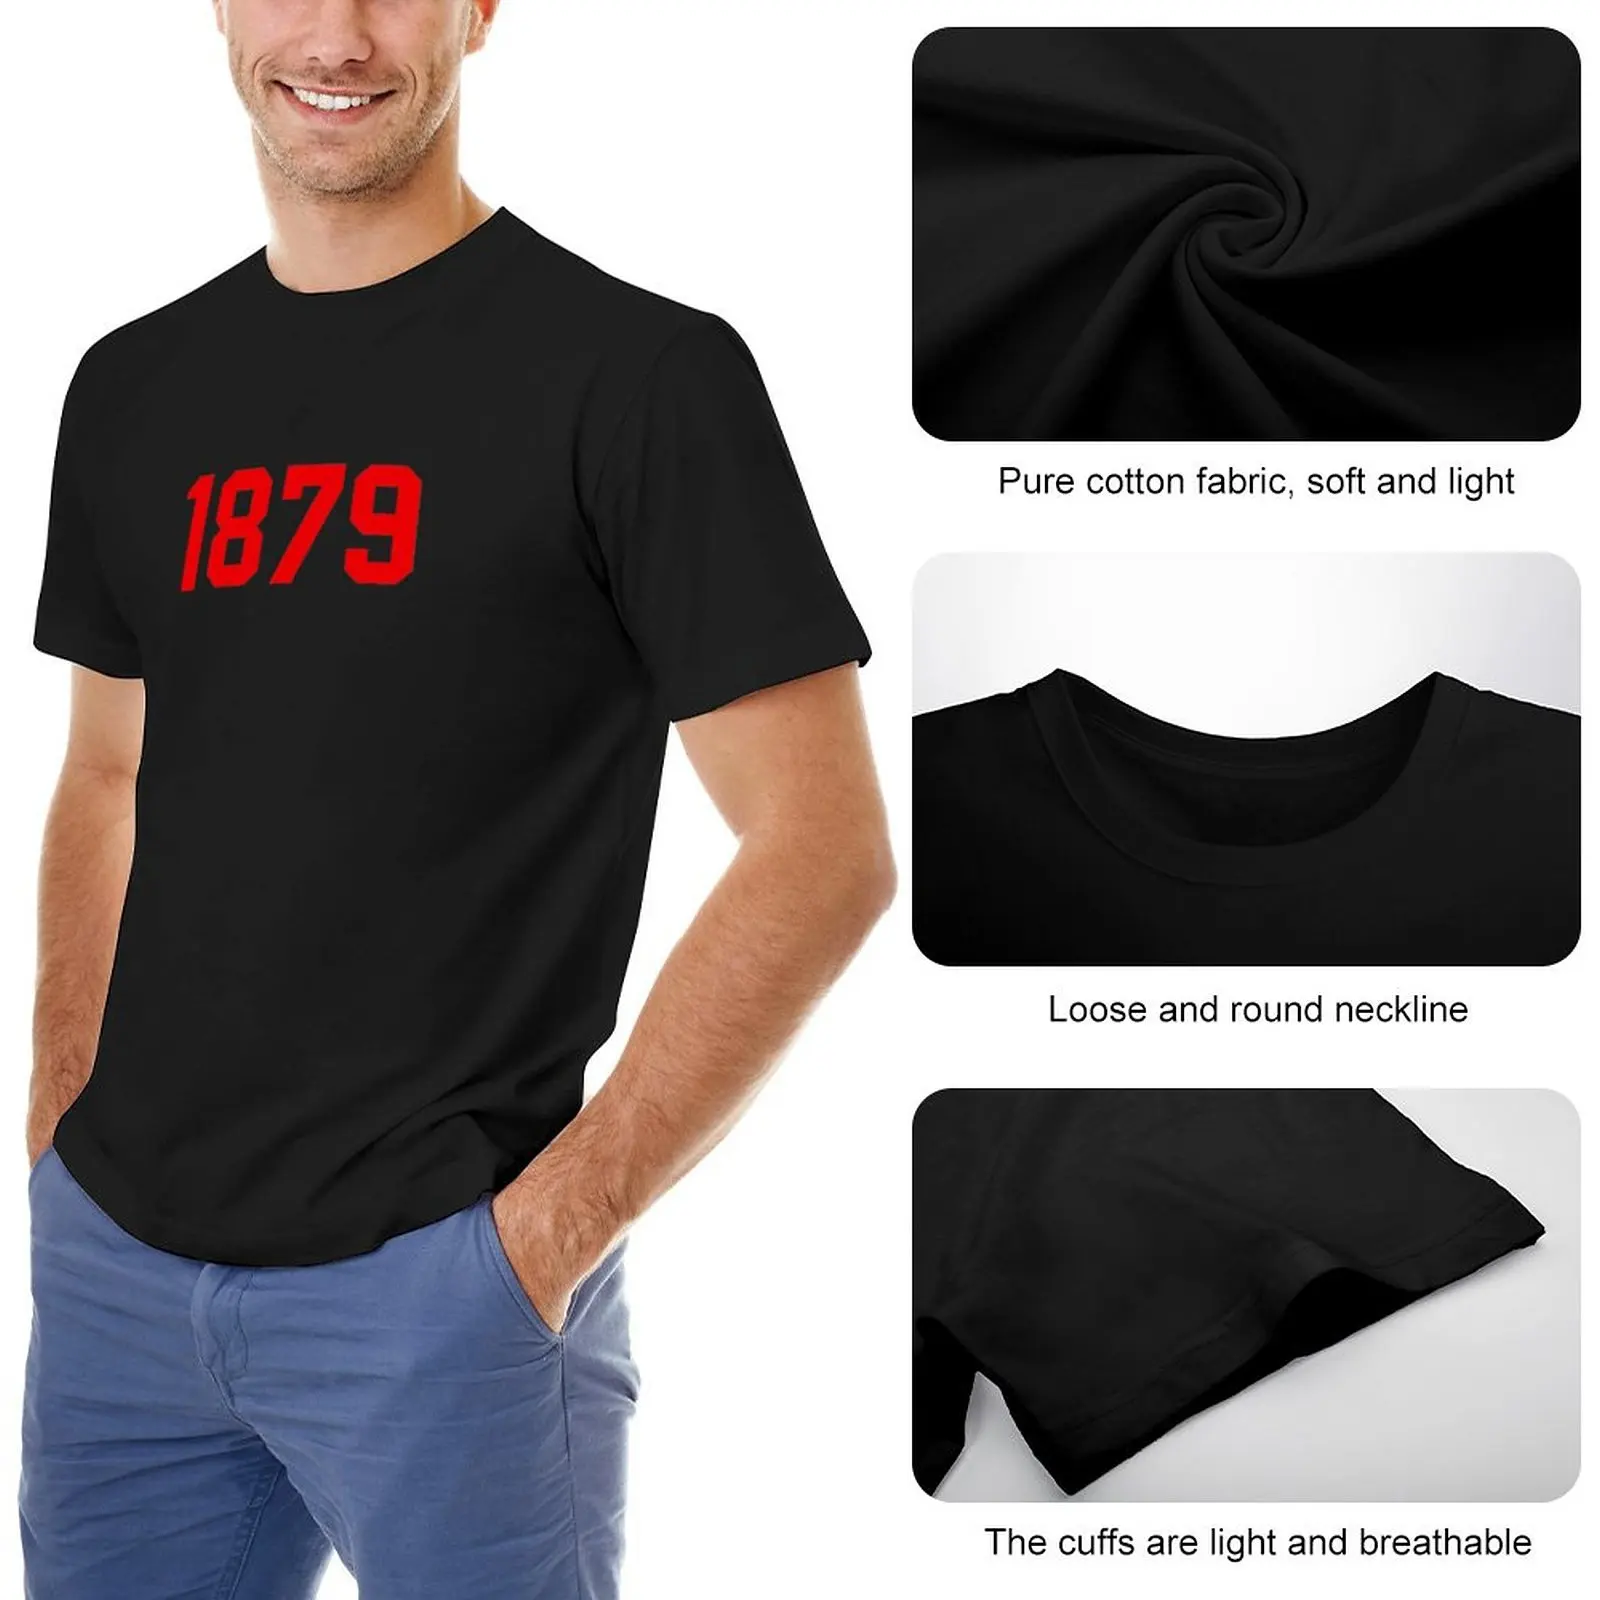 1879 Футболка Fulham Red, спортивная рубашка, эстетическая одежда, футболки на заказ, создайте свои собственные мужские футболки с длинным рукавом Изображение 1